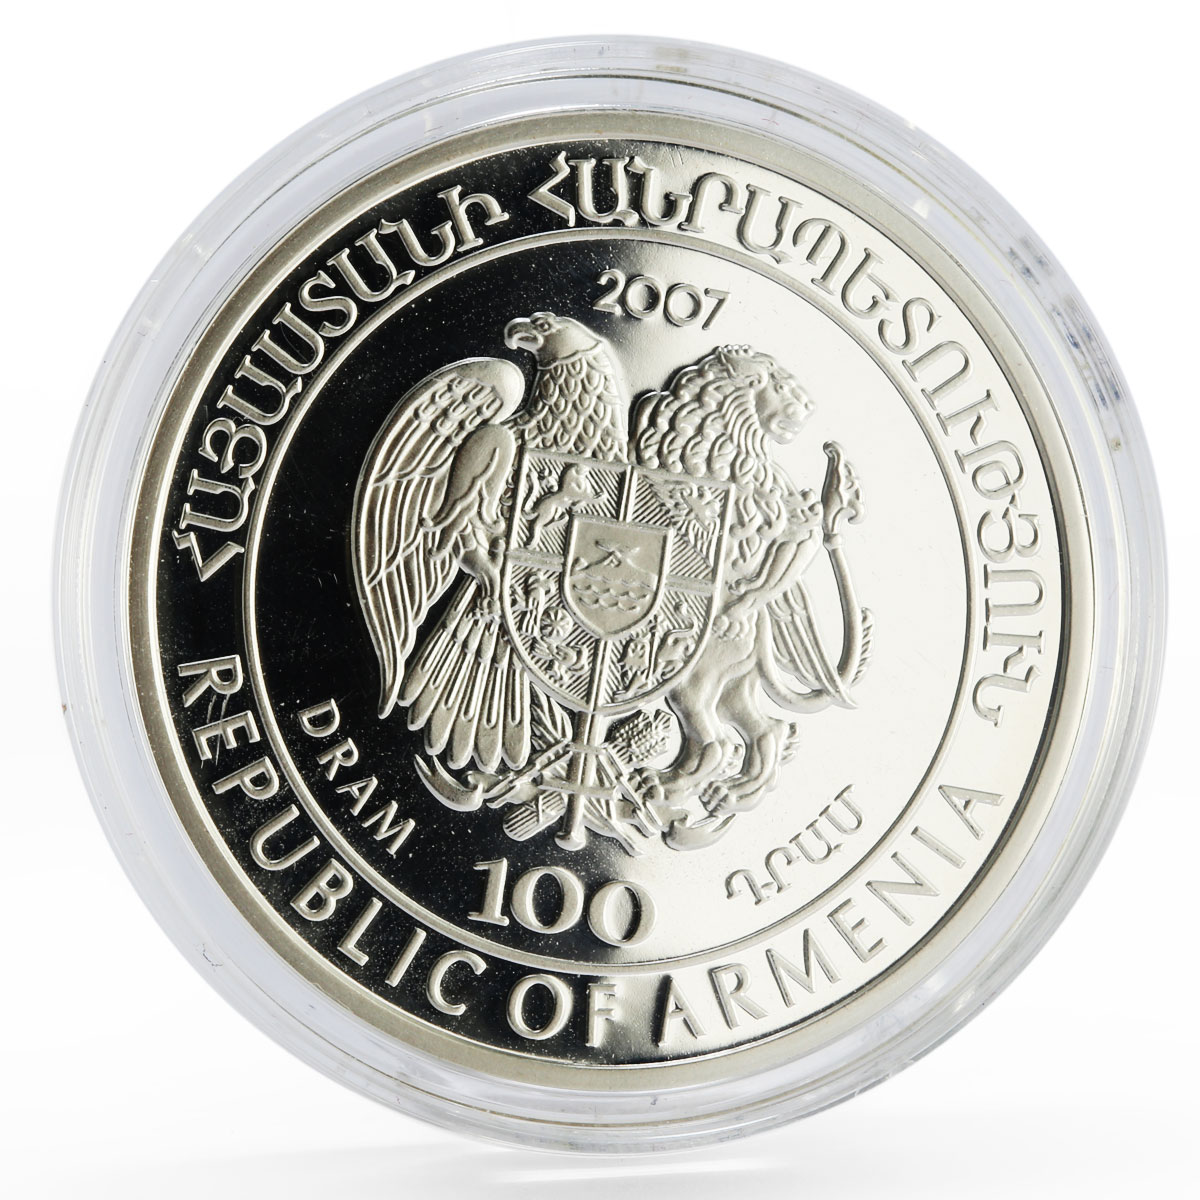 Armenia 100 dram Red Book of Armenia Fauna Sevan Trout Fish silver coin 2007